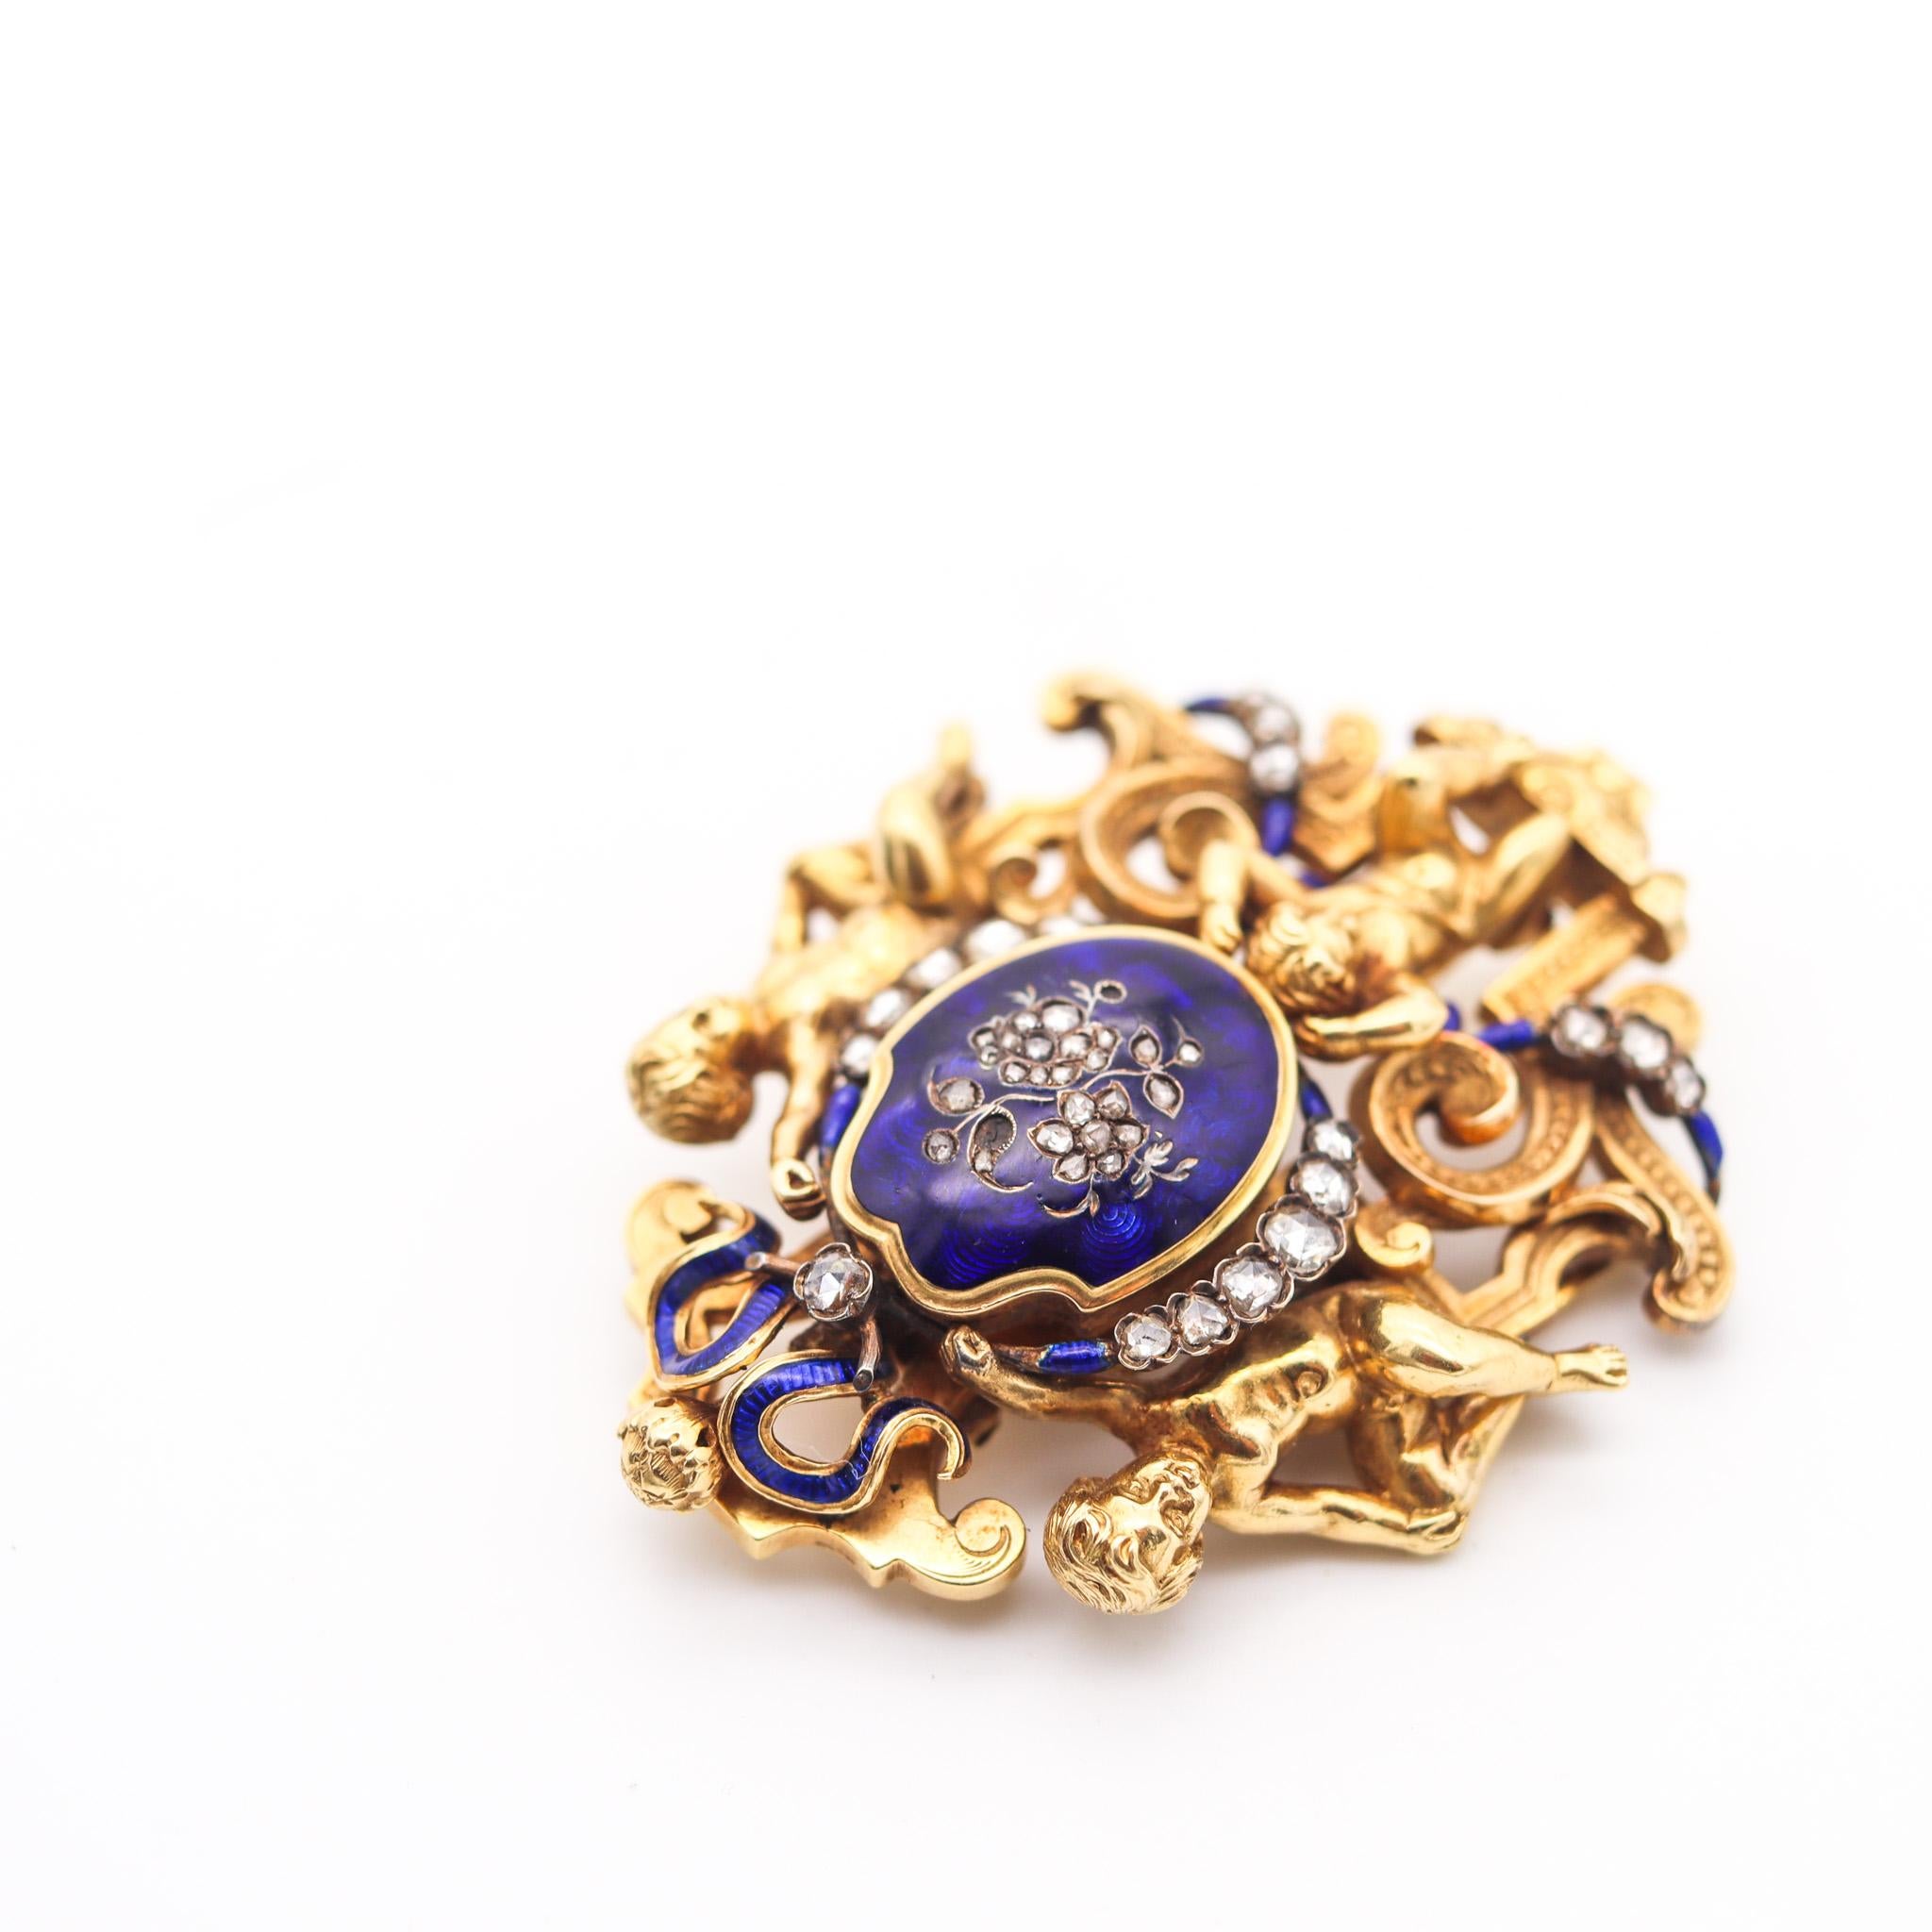 Women's Austrian 1820 Georgian Enameled Pendant Brooch In 18Kt Gold & Rose Cuts Diamonds For Sale